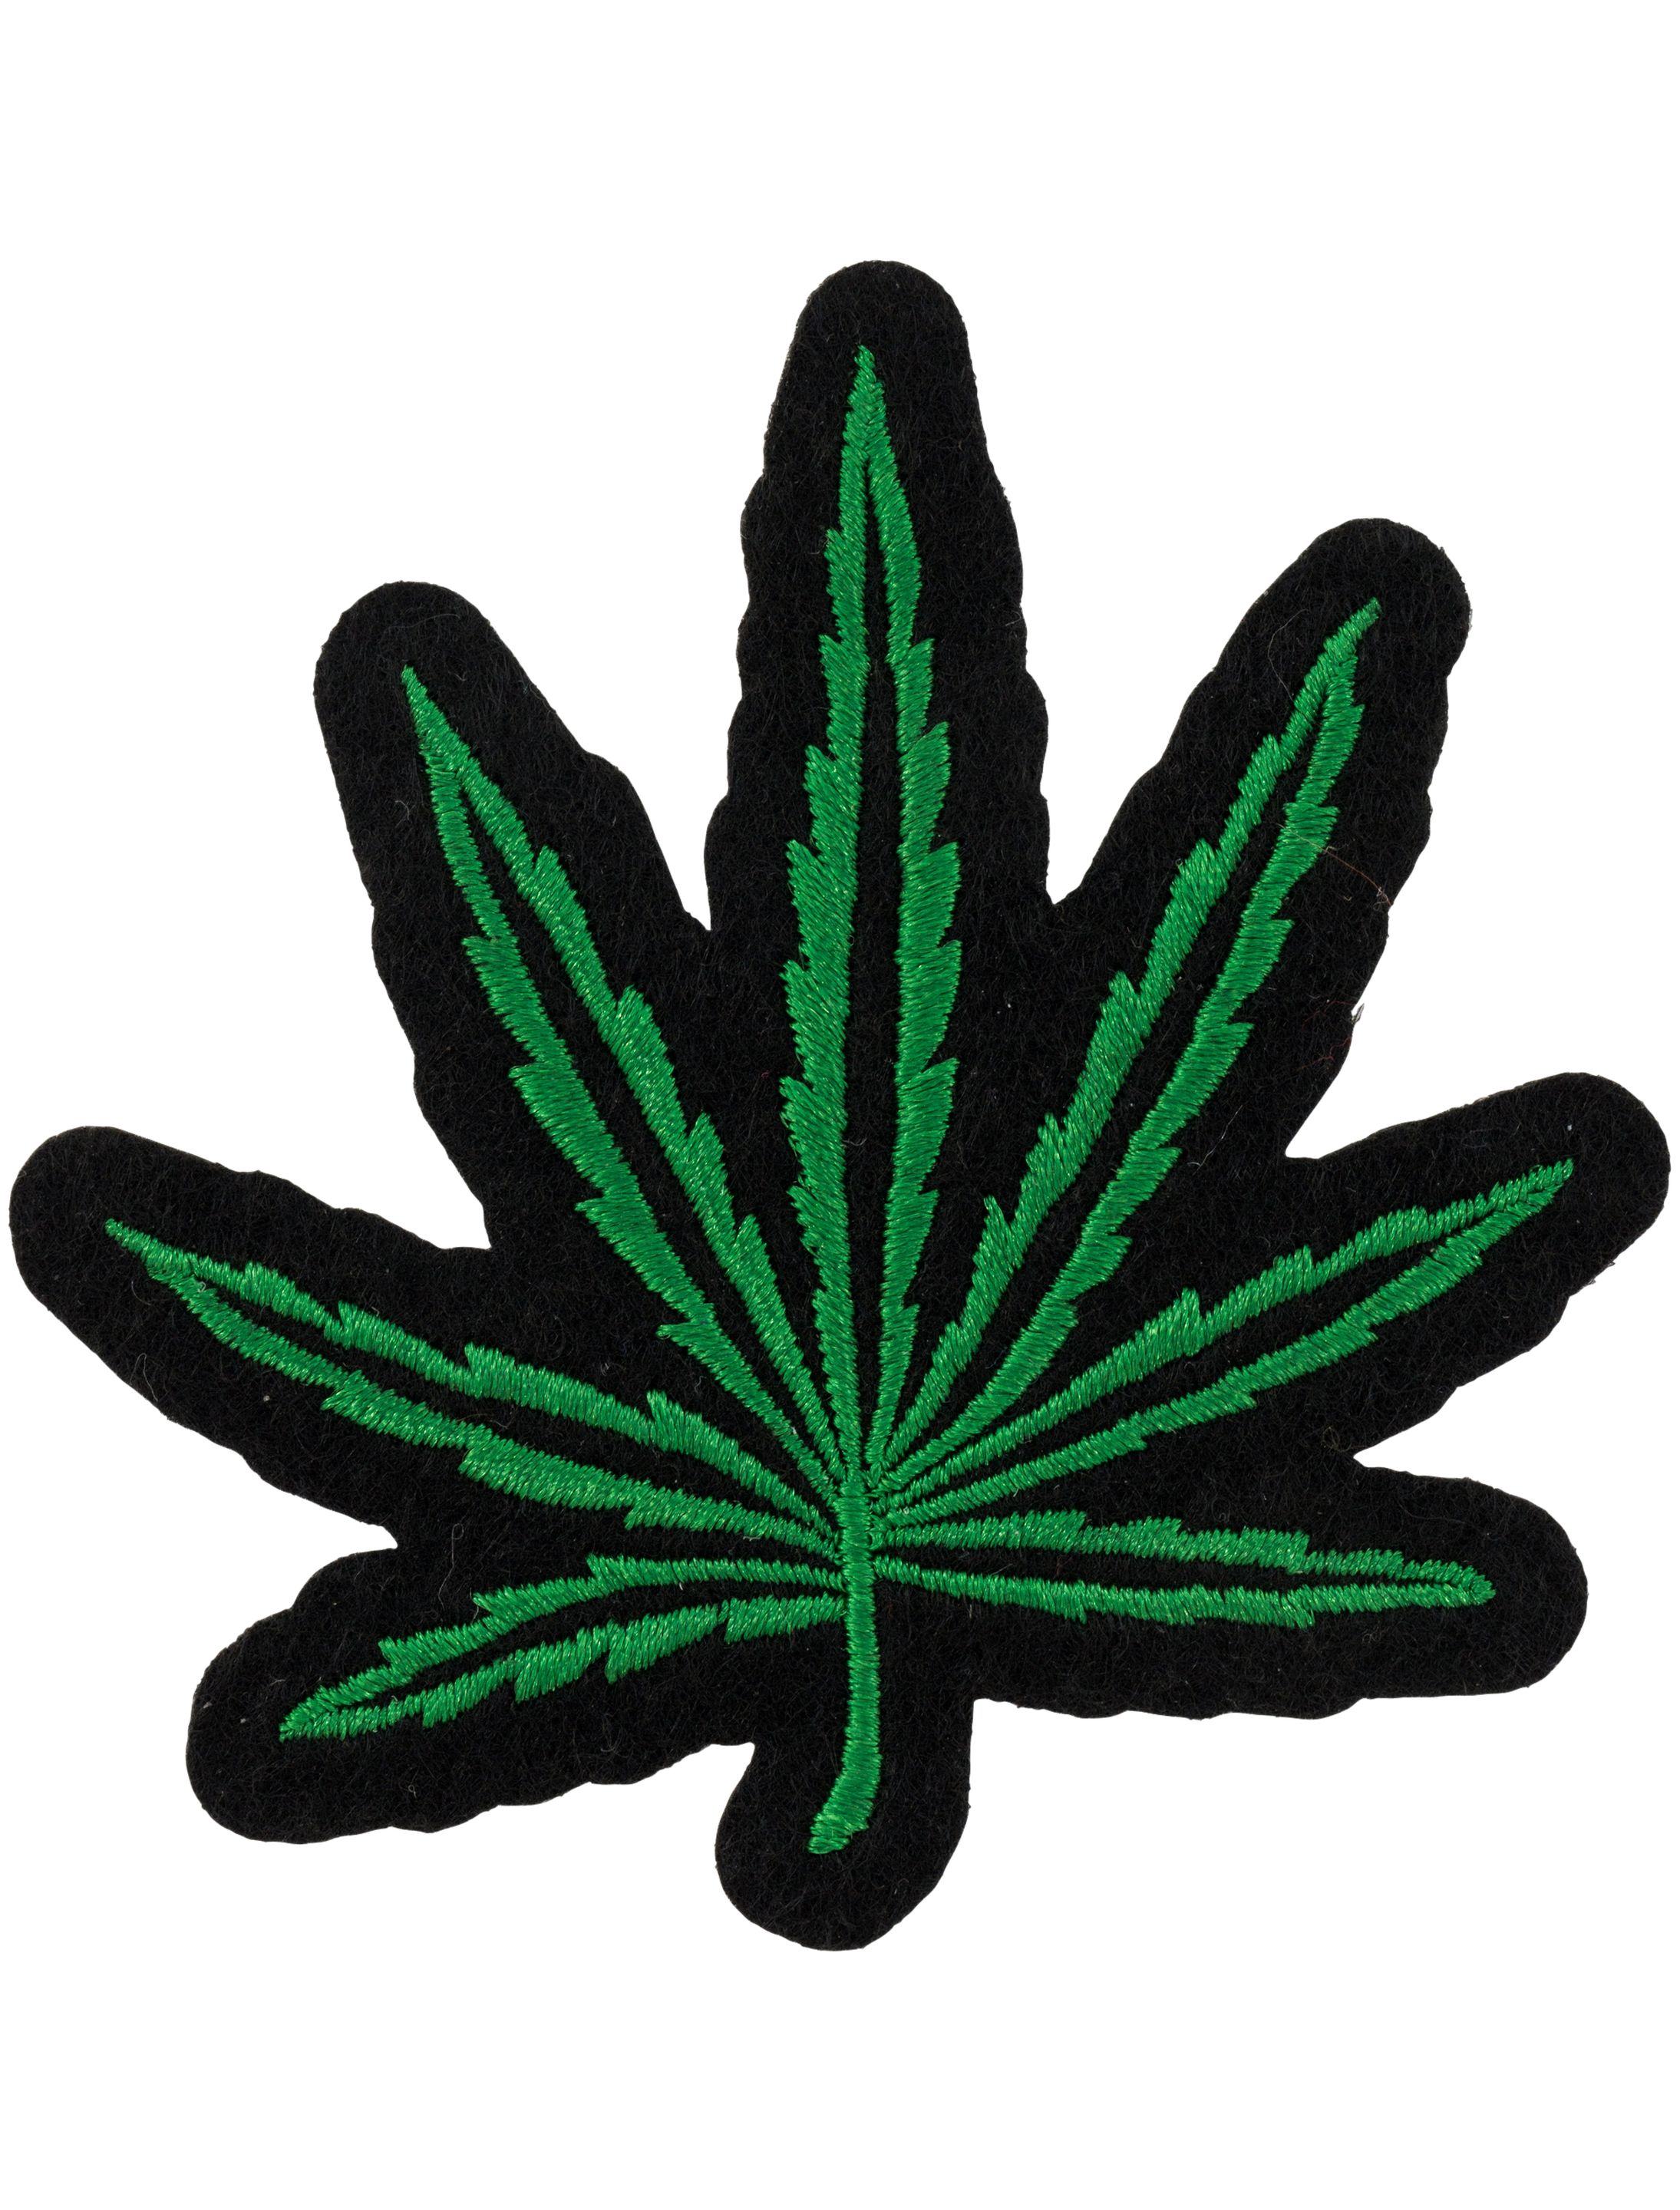 Aufnäher/Bügelbild Cannabis 8cm grün